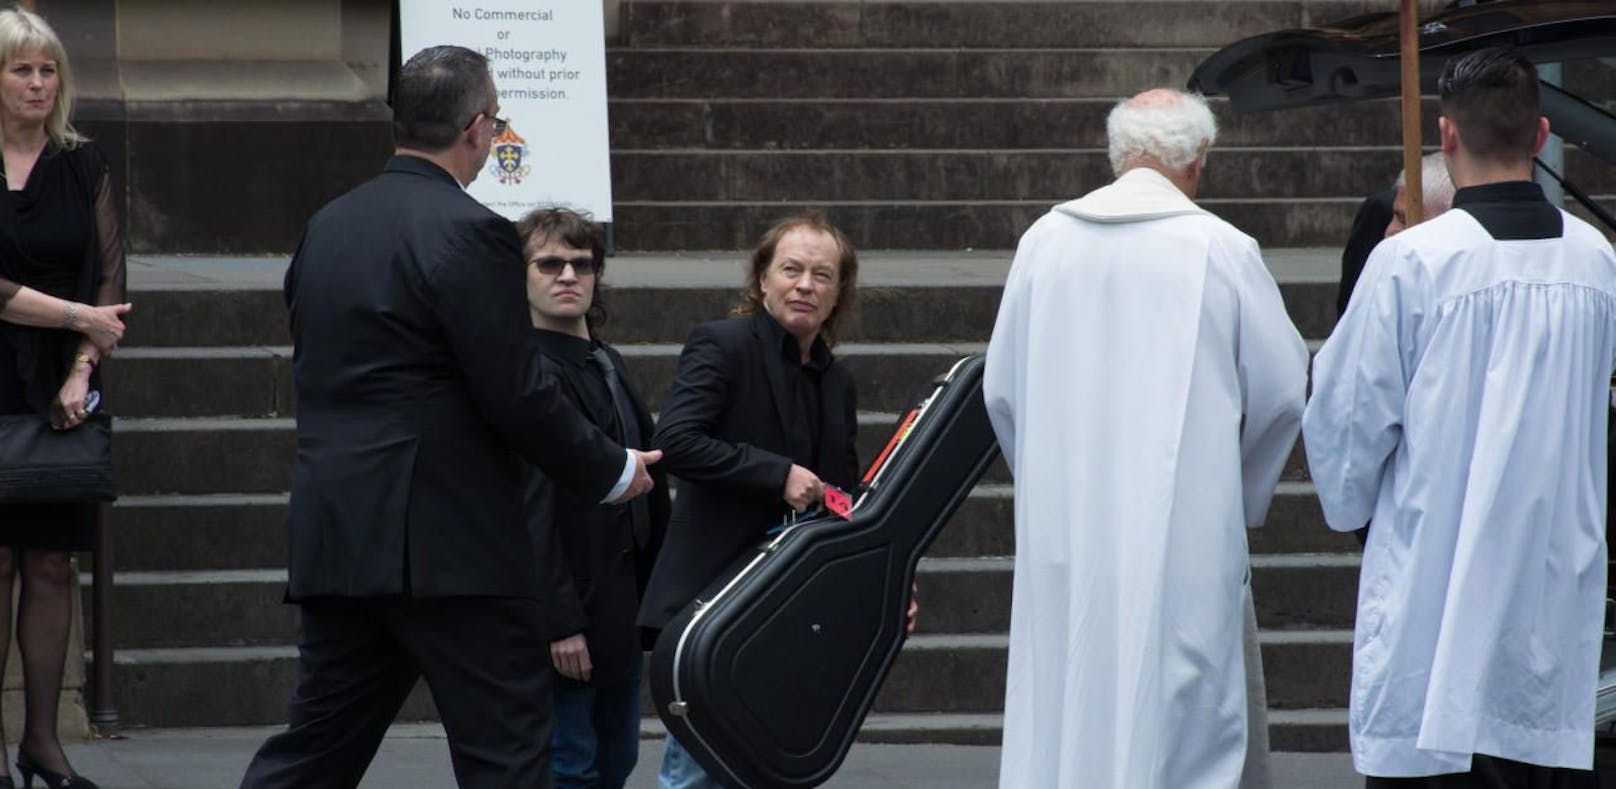 Angus Young brachte "The Beast" zur Beerdigung mit